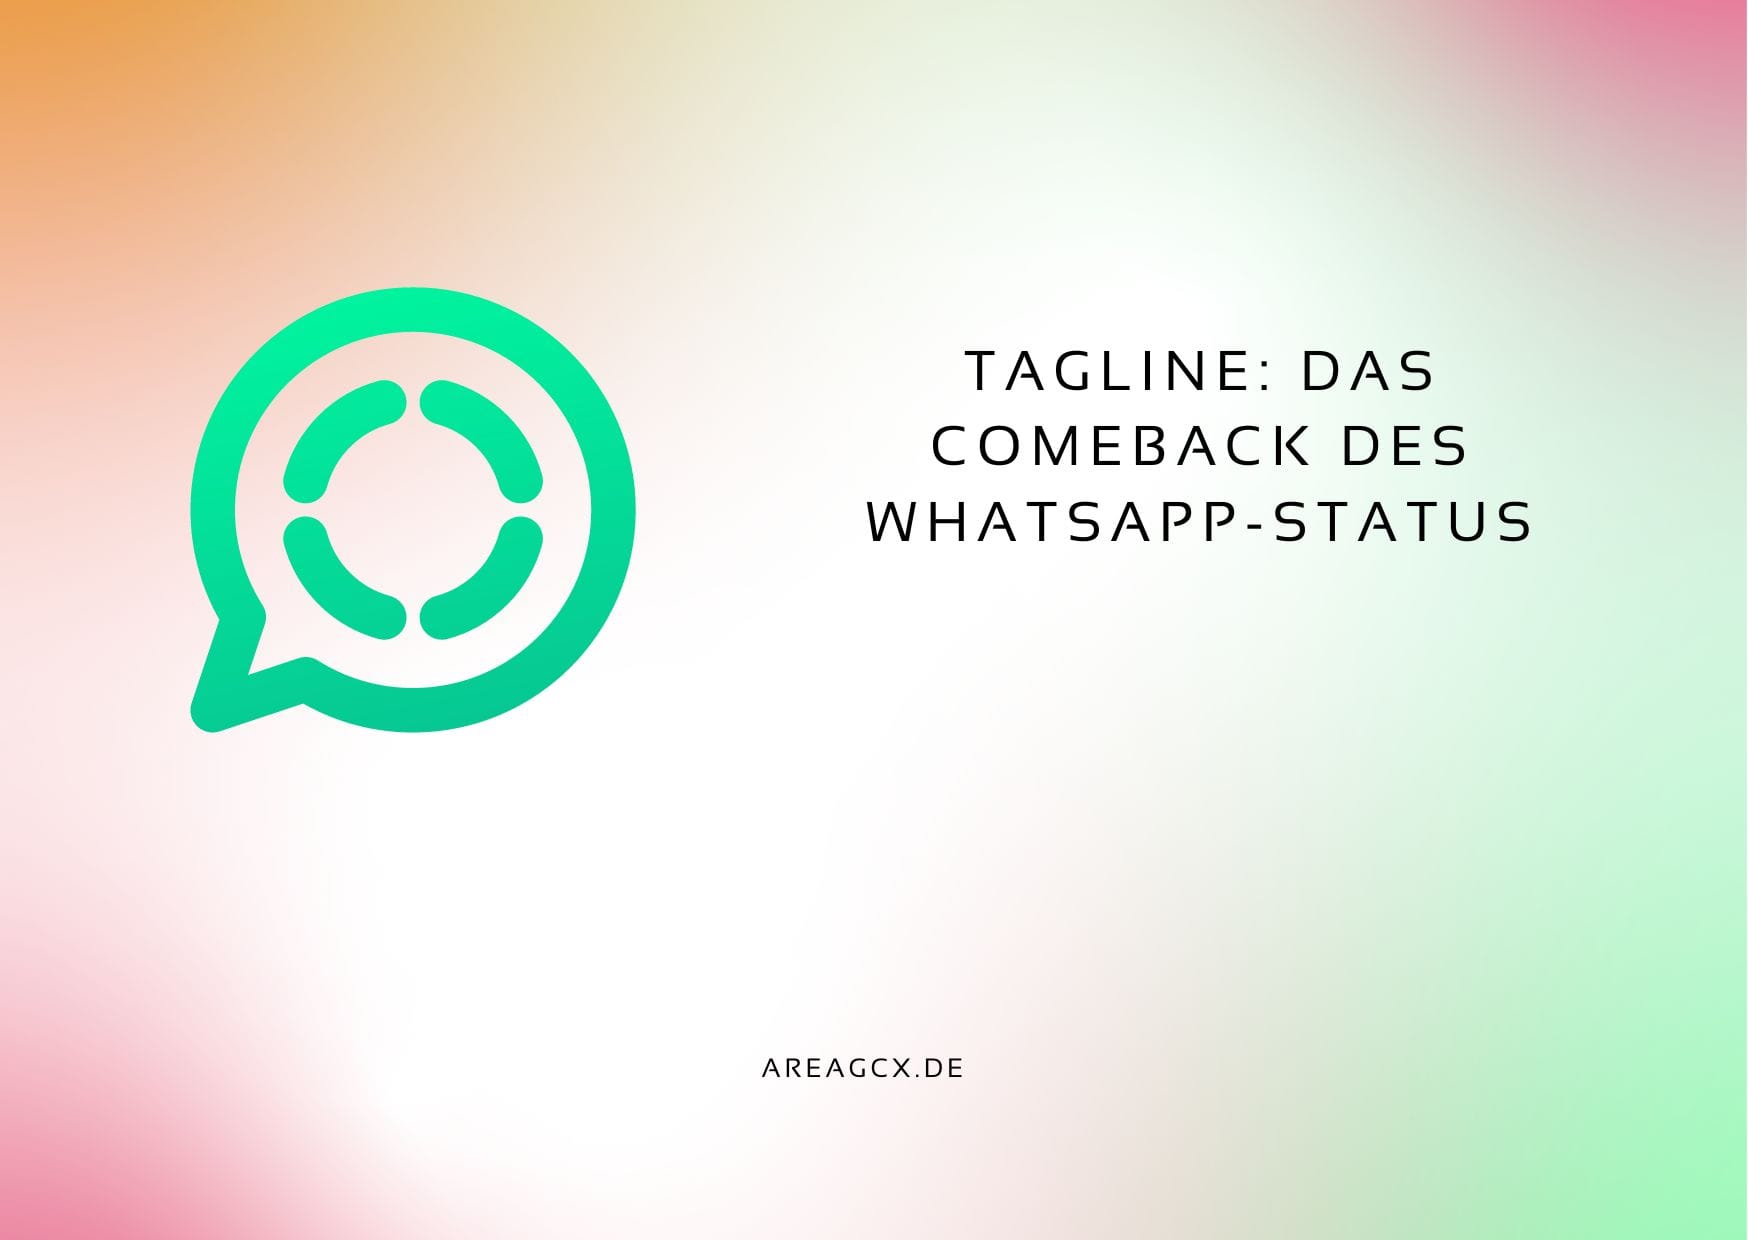 WhatsApp-Status kehrt als “Tagline” zurück